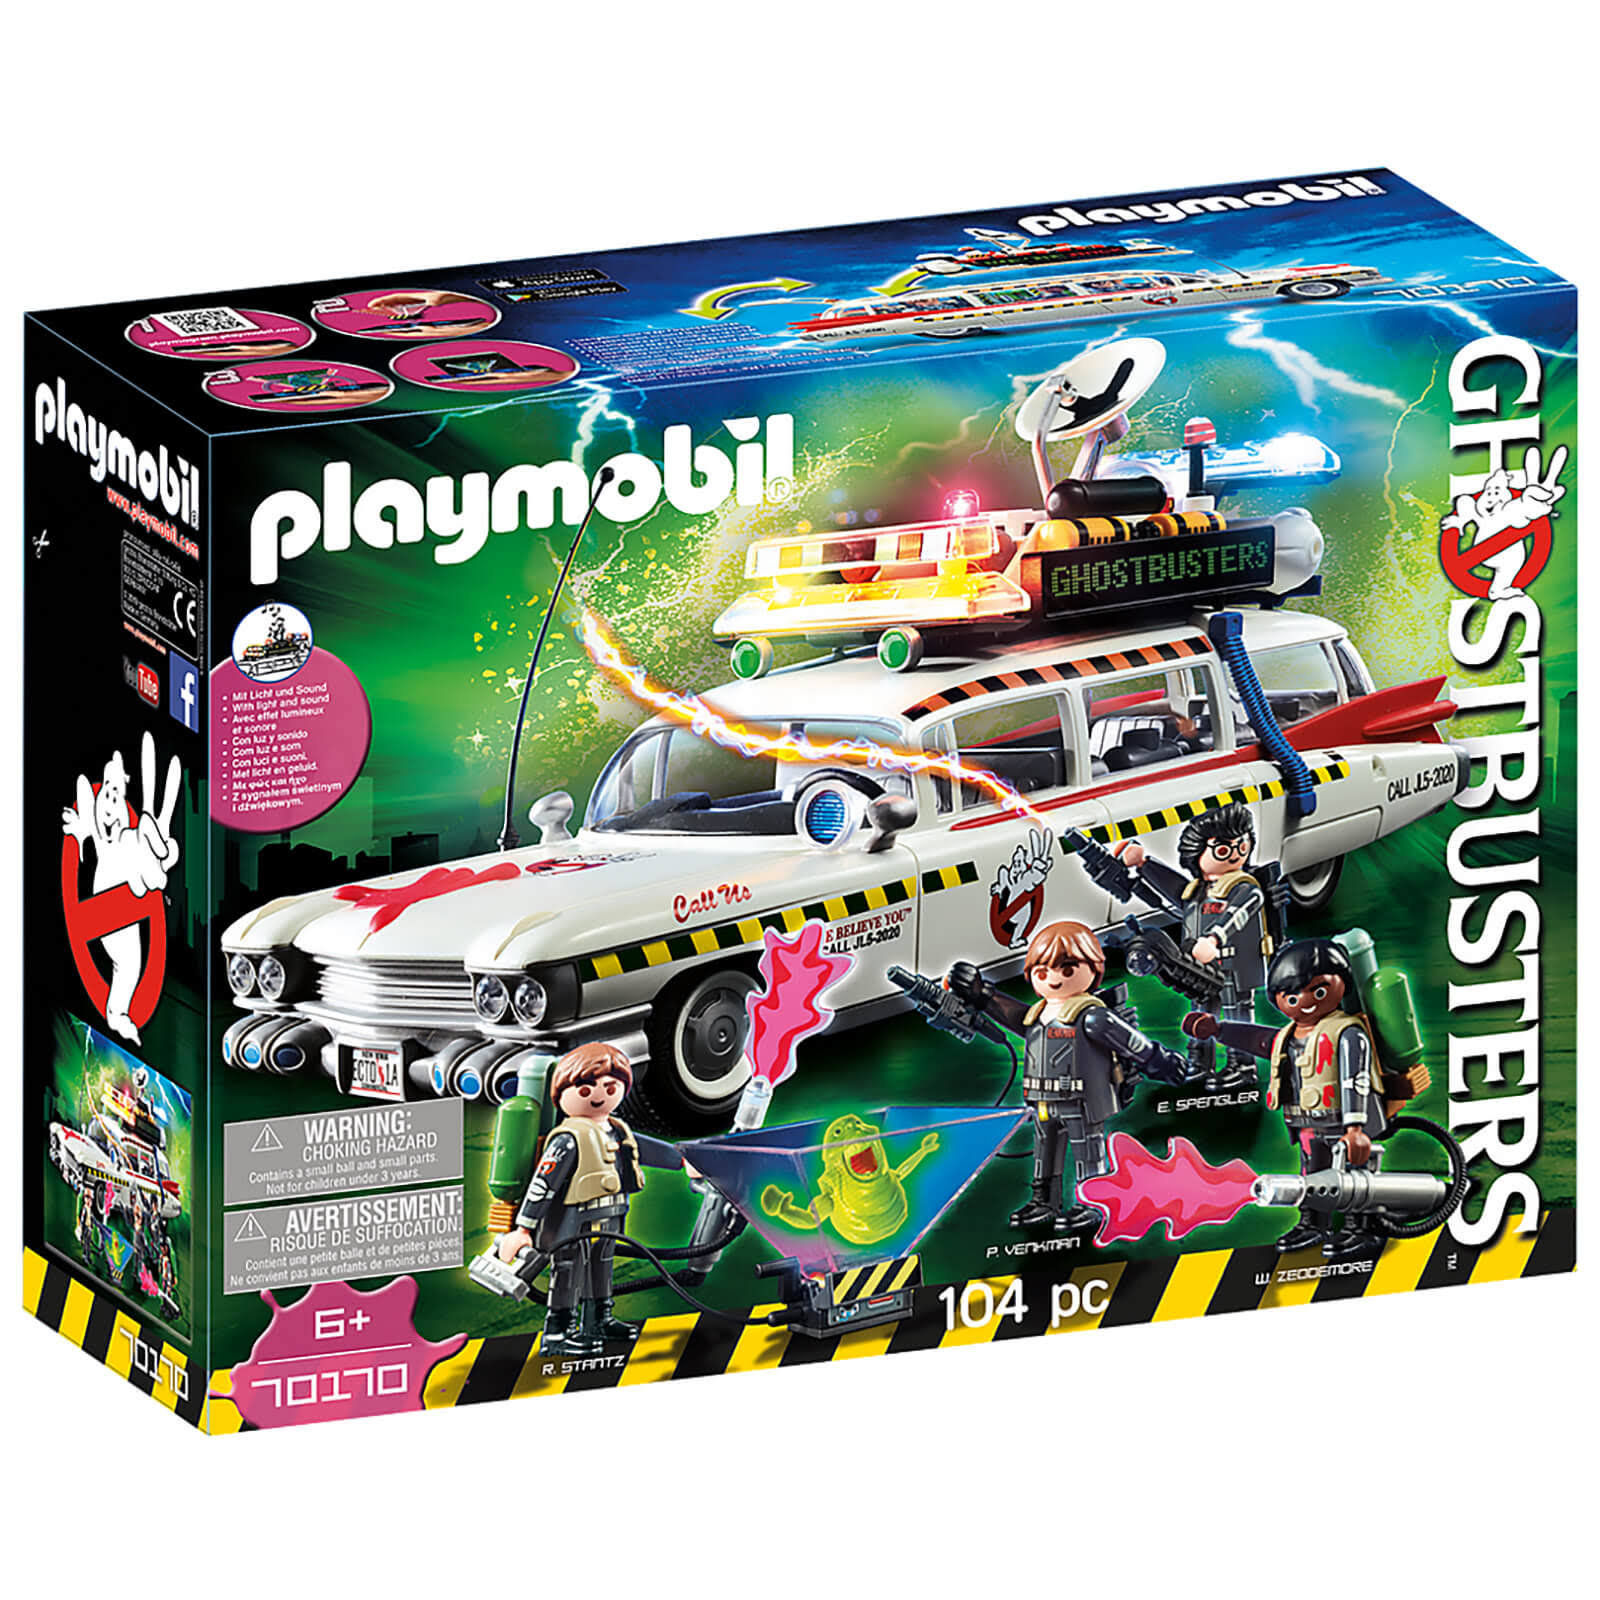 Playmobil Ghostbusters Playkit